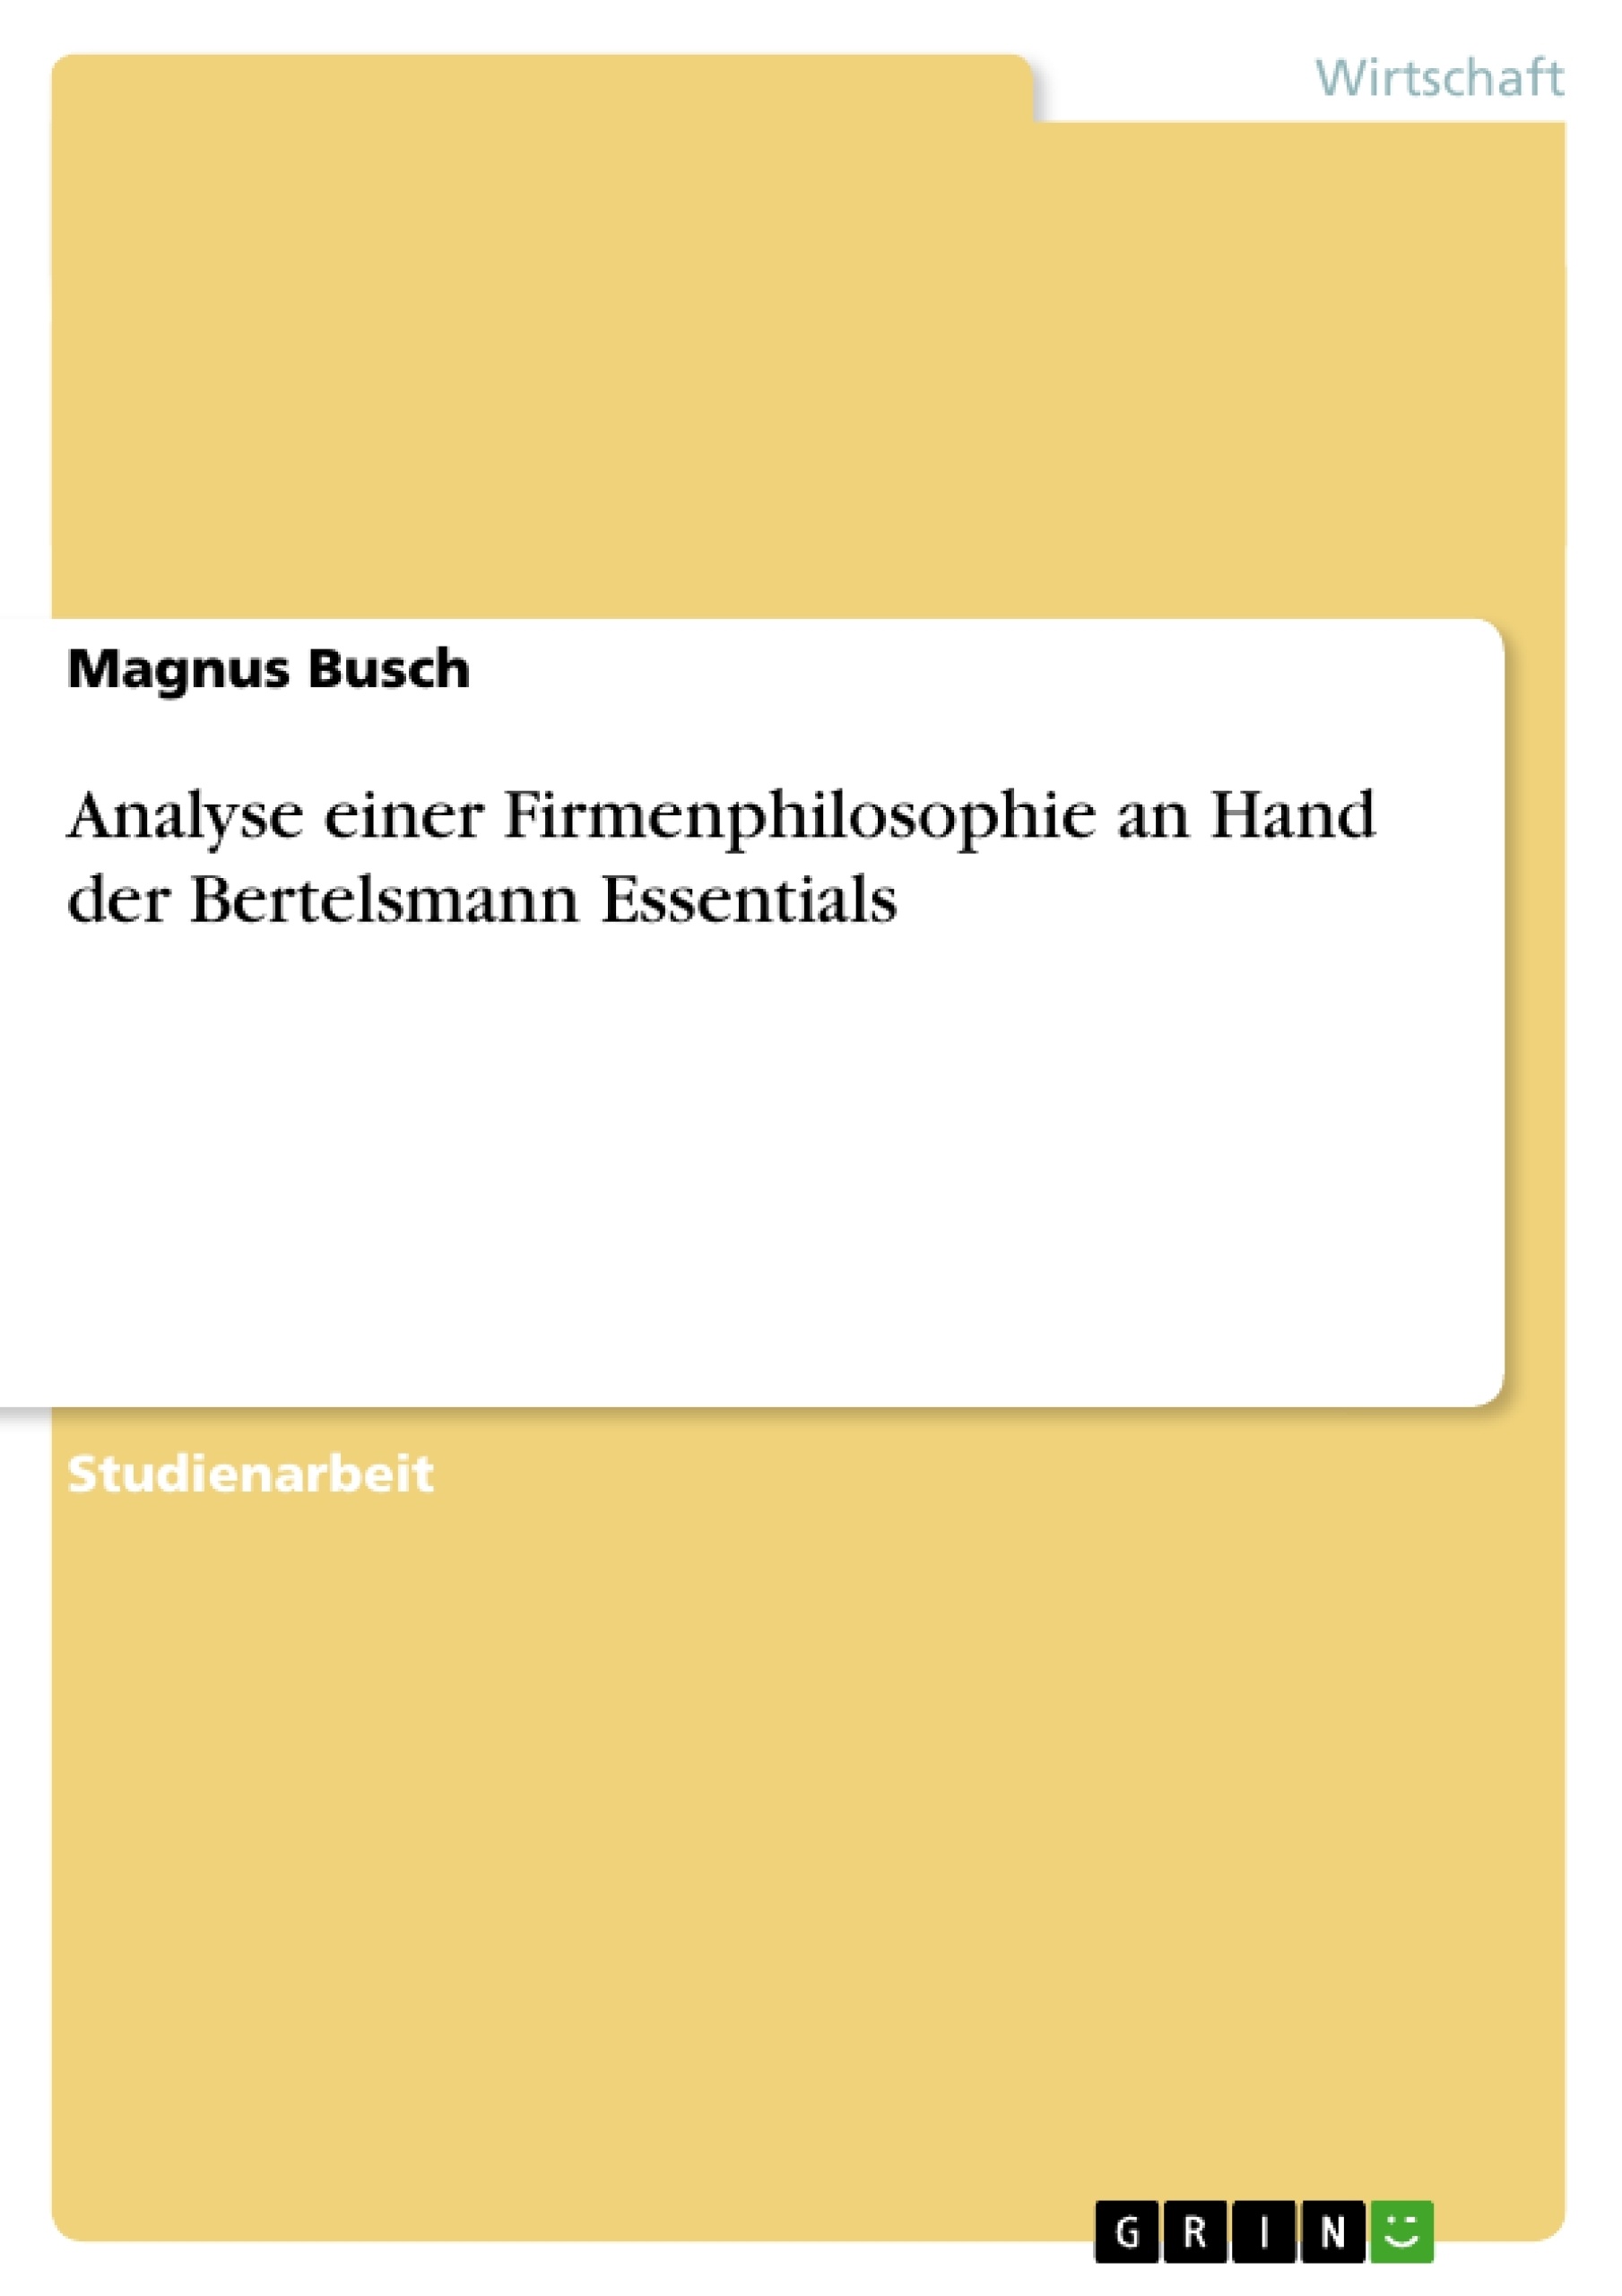 Titre: Analyse einer Firmenphilosophie an Hand der Bertelsmann Essentials